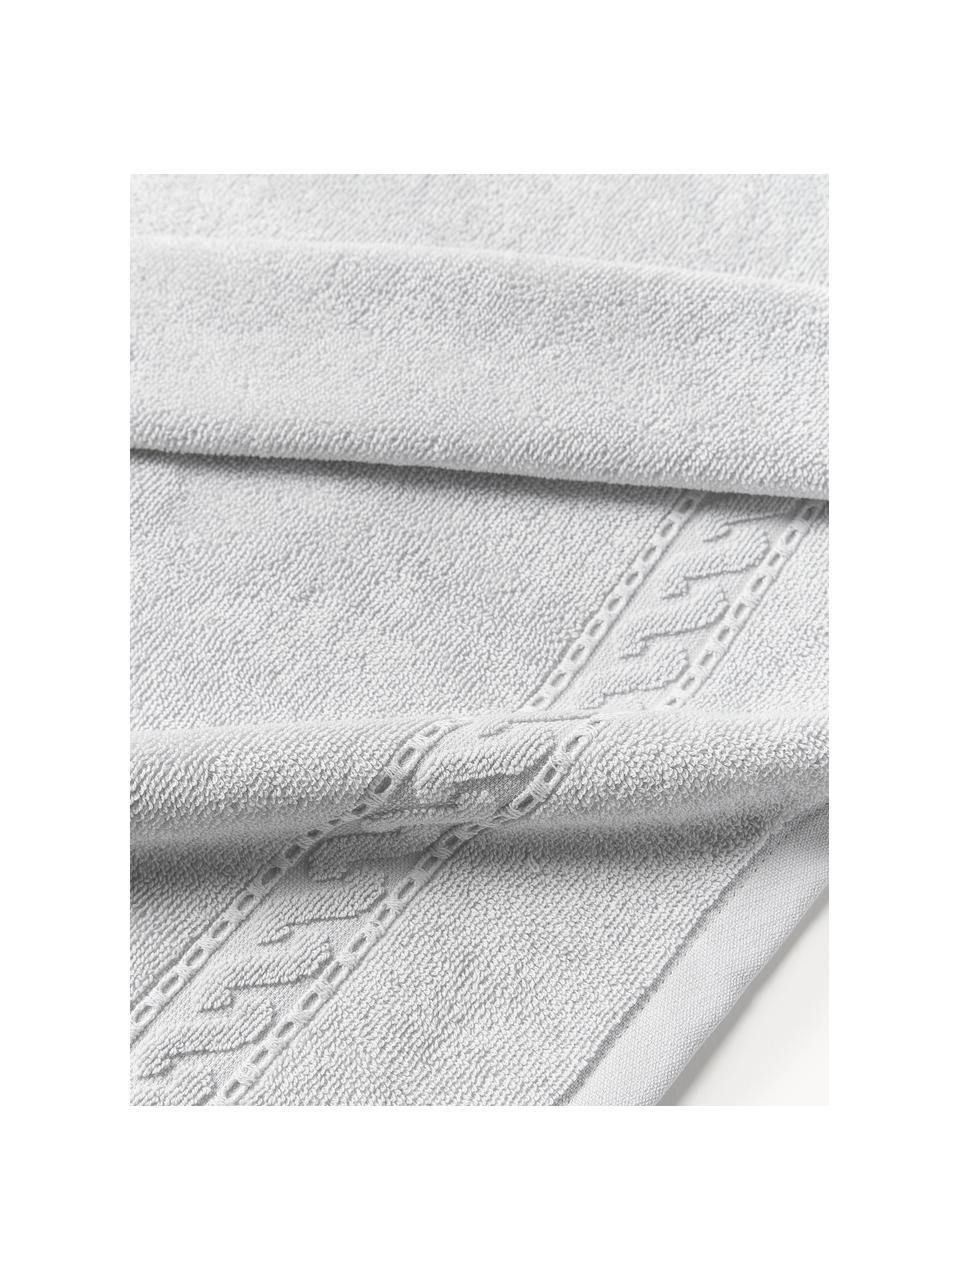 Handtuch Cordelia in verschiedenen Größen, 100 % Baumwolle, Hellgrau, Handtuch, B 50 x L 100 cm, 2 Stück